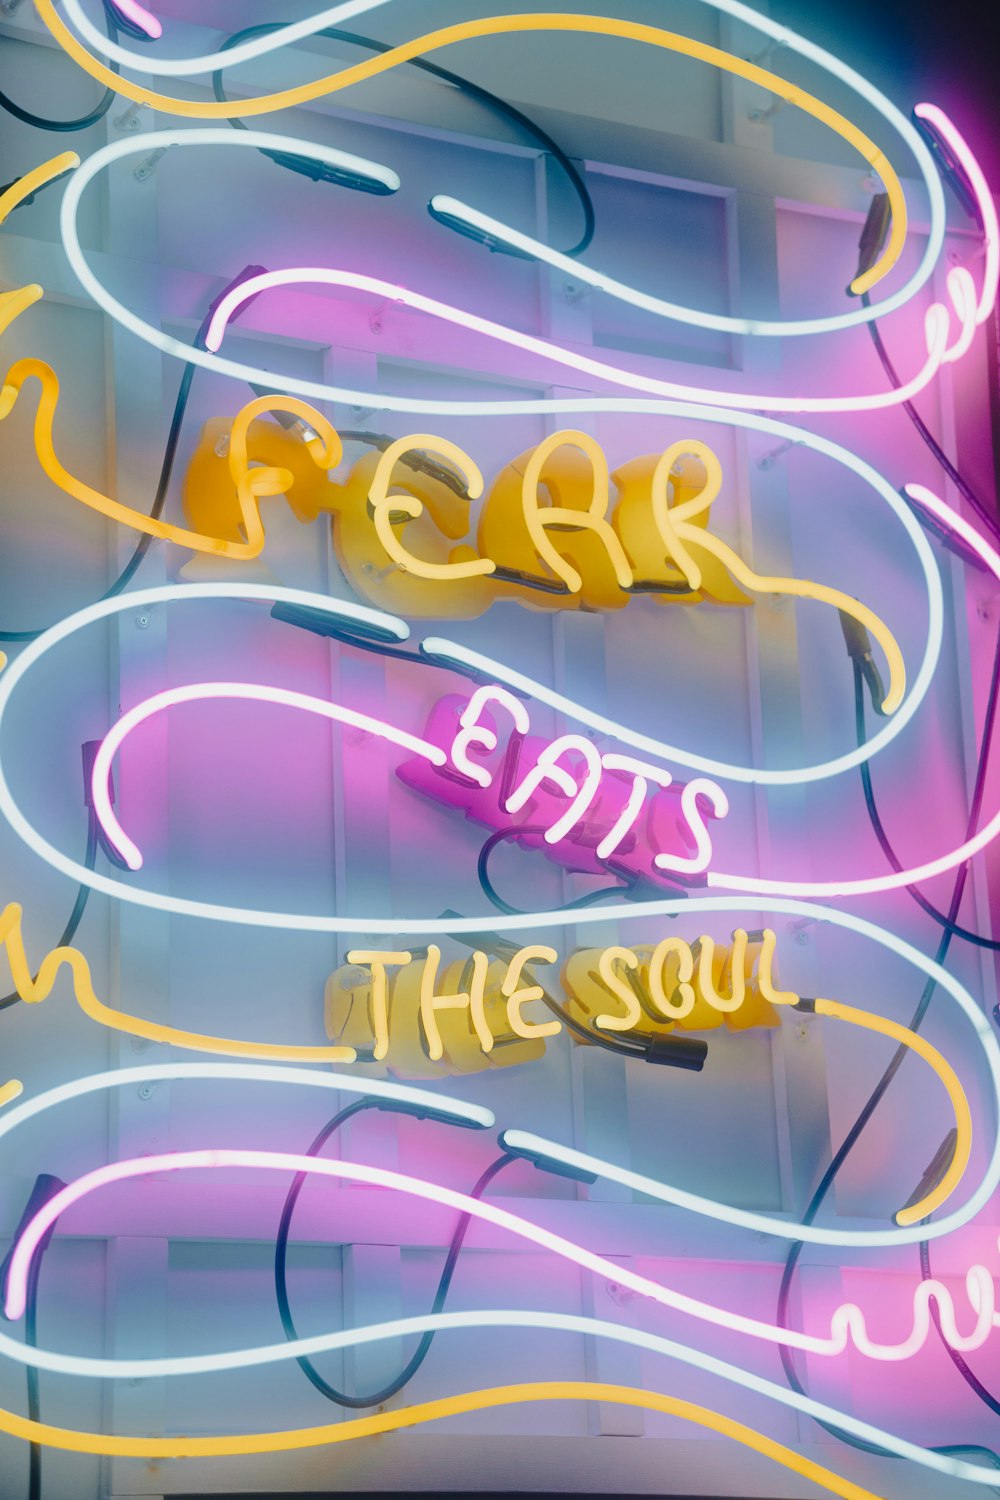 Un'insegna al neon che dice che la paura mangia nell'anima